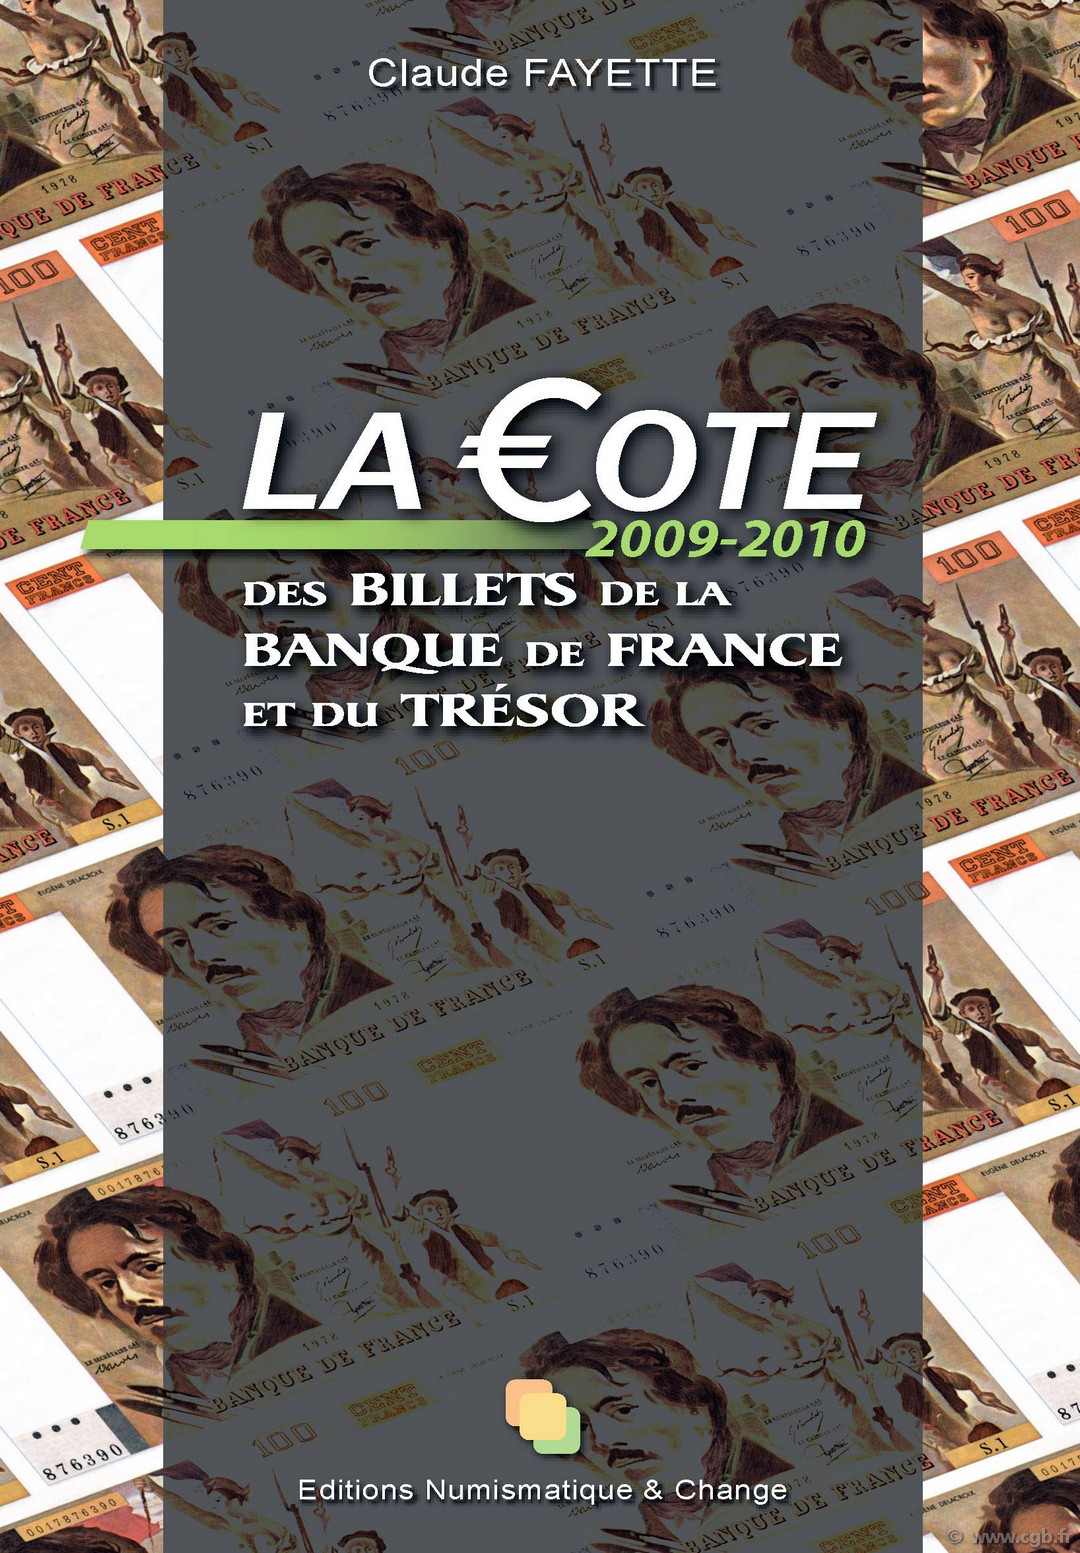 La cote des billets de la Banque de France et du Trésor 2009-2010 FAYETTE Claude